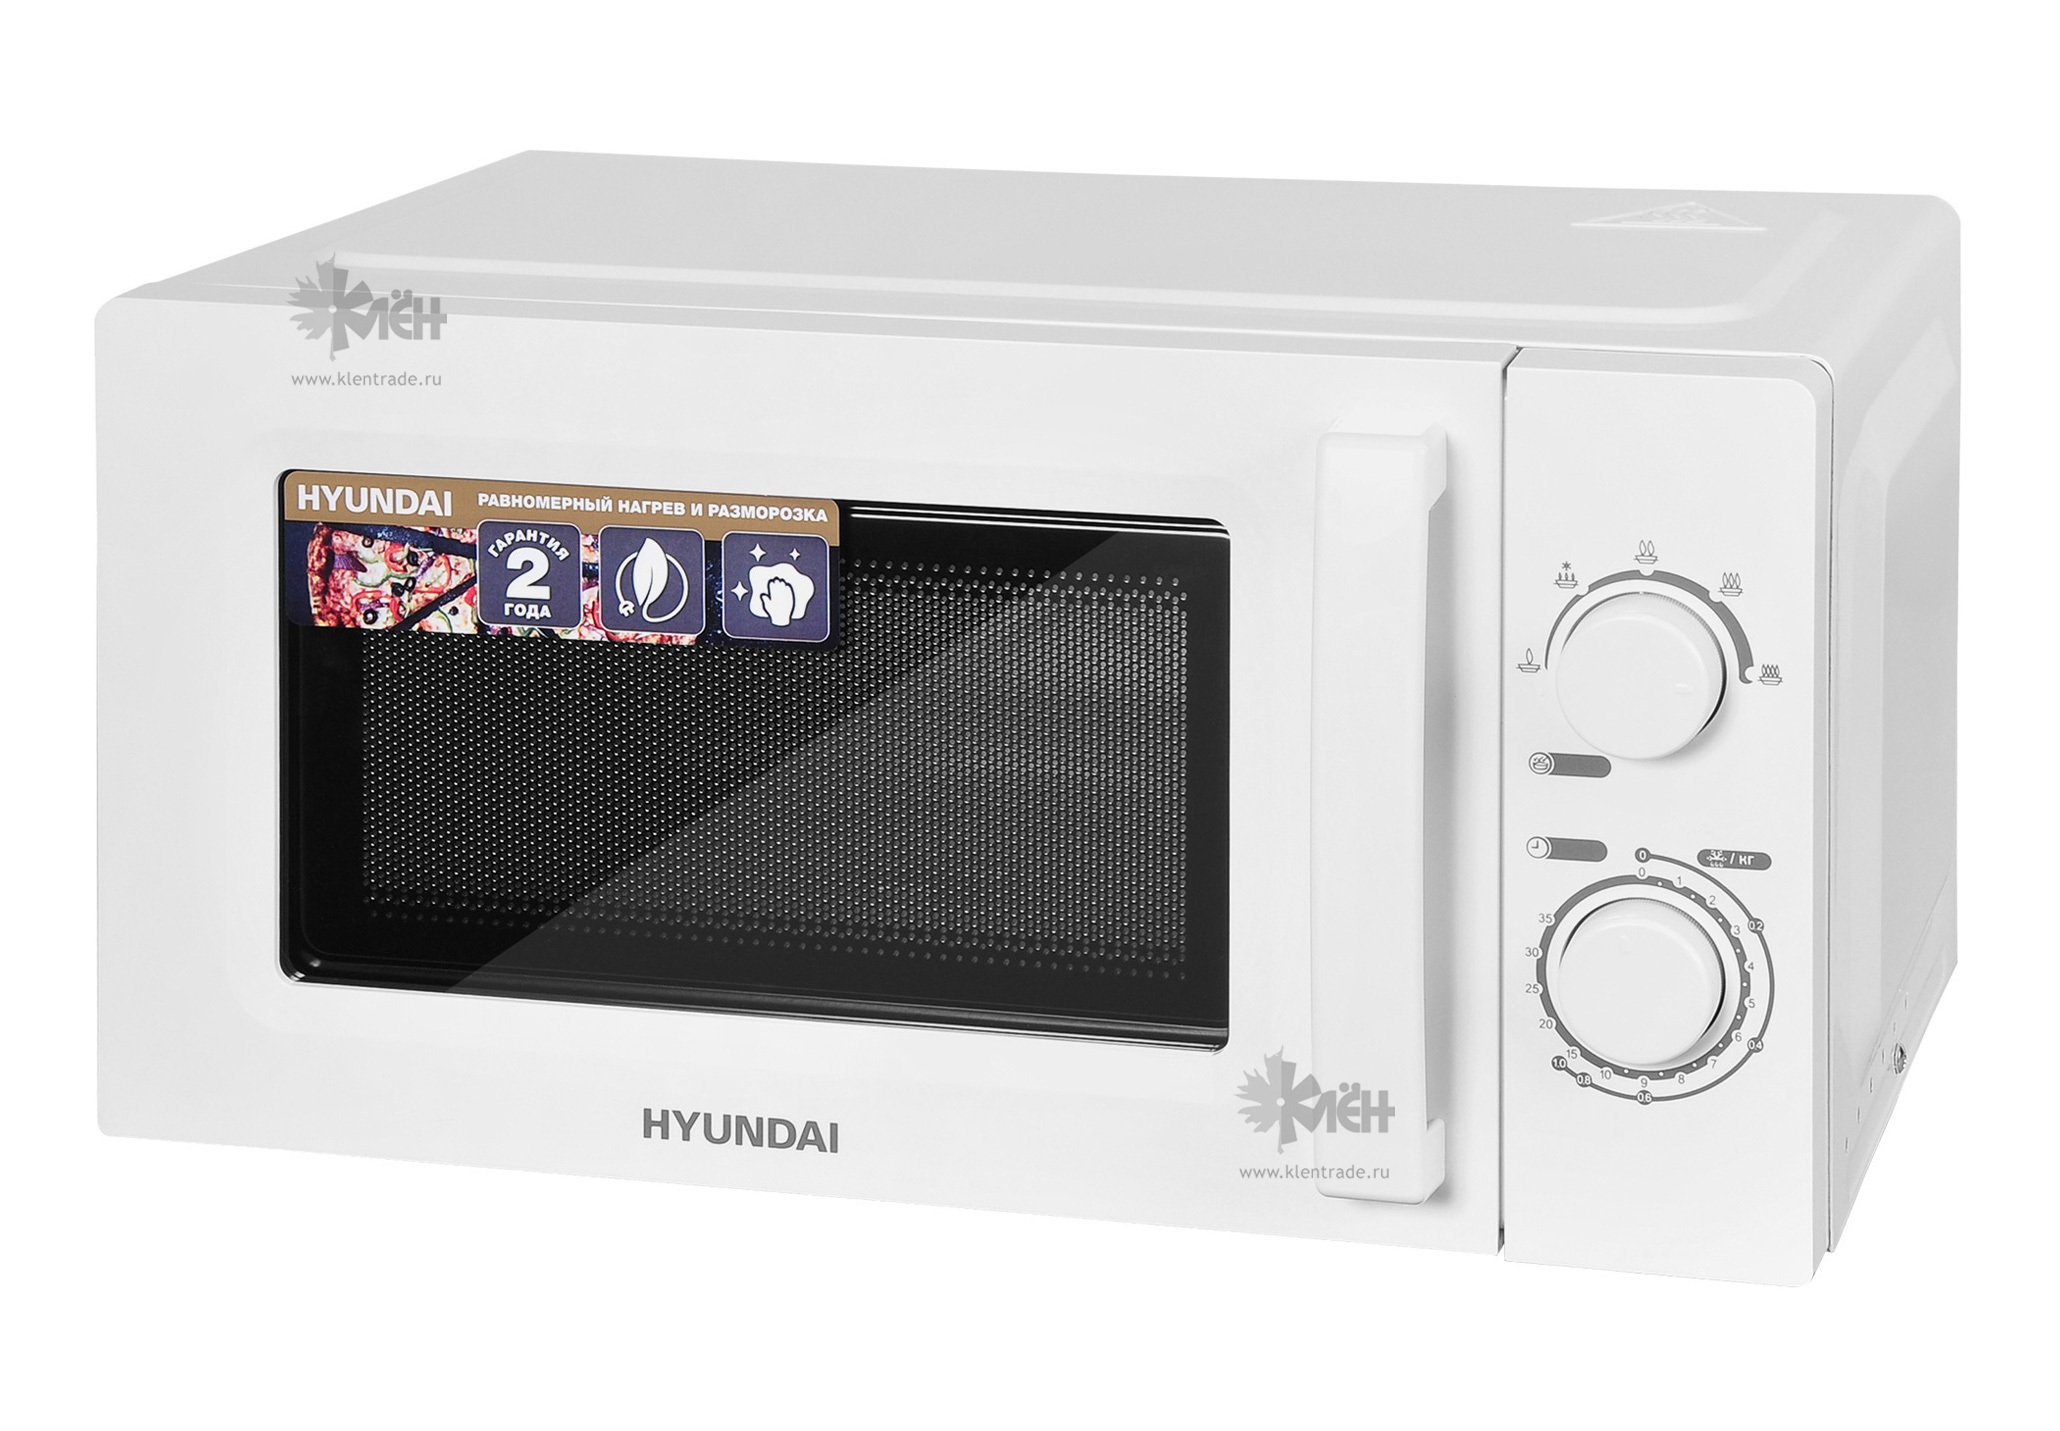 Микроволновая печь hyundai купить. Микроволновая печь Hyundai HYM-m2060. Микроволновая печь Hyundai HYM-m2059. Микроволновая печь Hyundai HYM-d2073. Микроволновая печь Hyundai HYM-m2005, 700вт, 20л, белый.